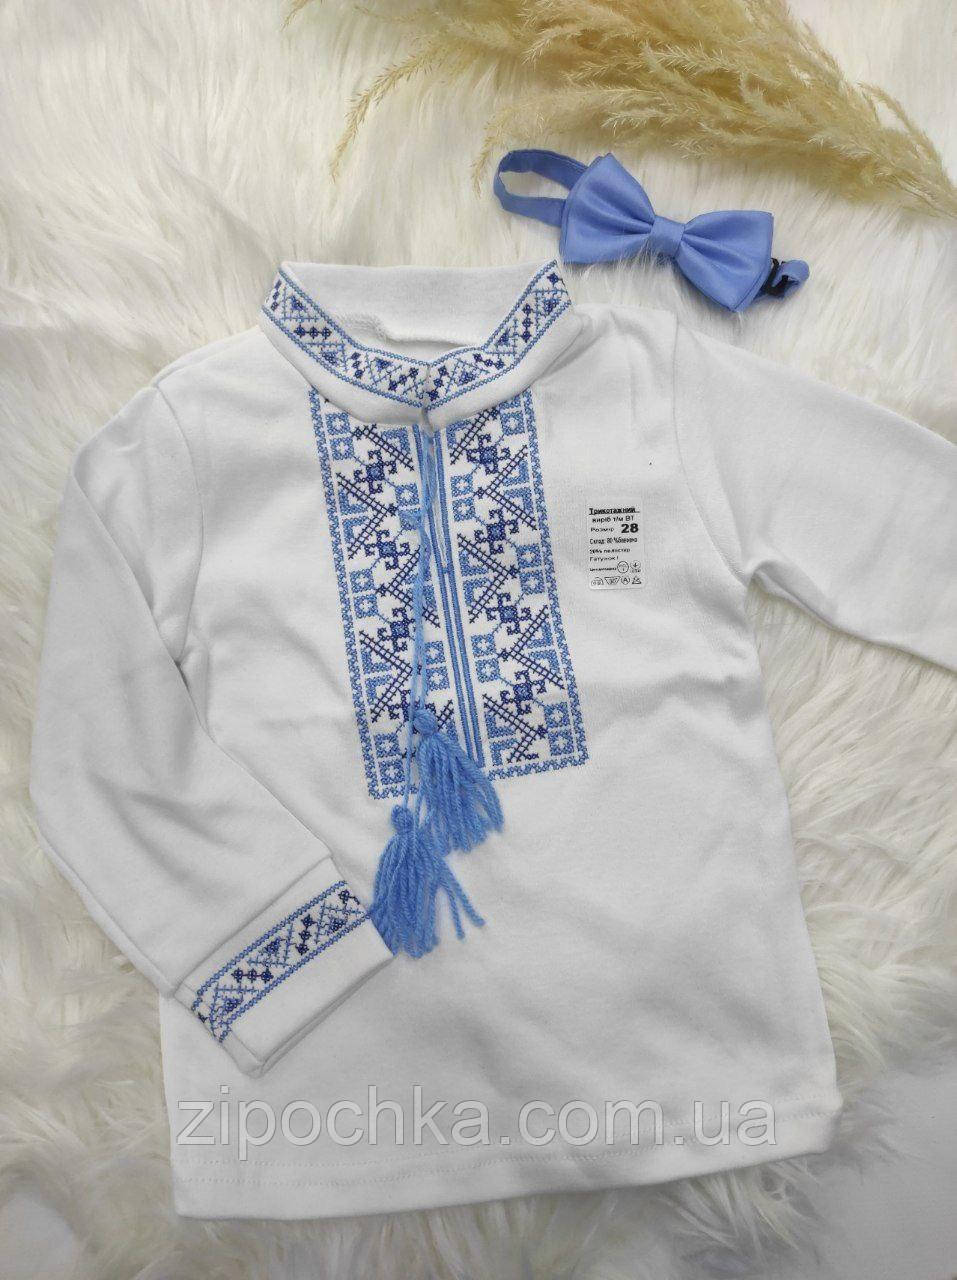 Детская вышиванка сорочка бело-синяя для мальчика  28, 30, 32, 34 розмір